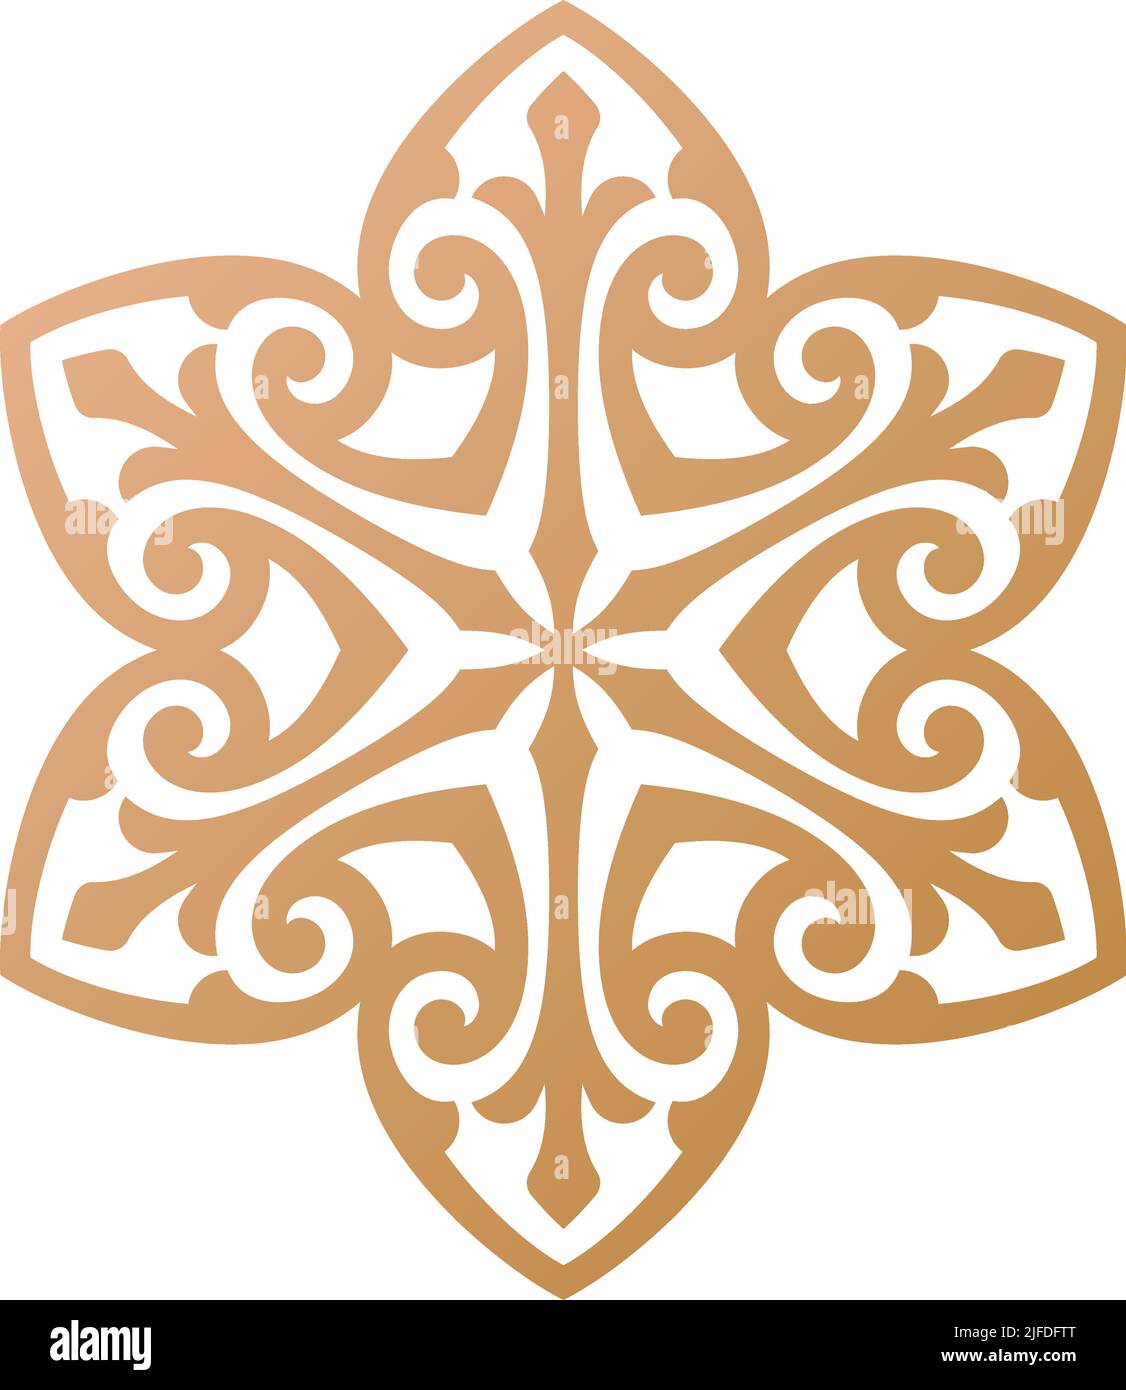 Mandala simple et motif rond décoratif et ornement inspiré de l'art persan, arabe, marocain et turc, adapté pour tatouage, gravure ... Illustration de Vecteur